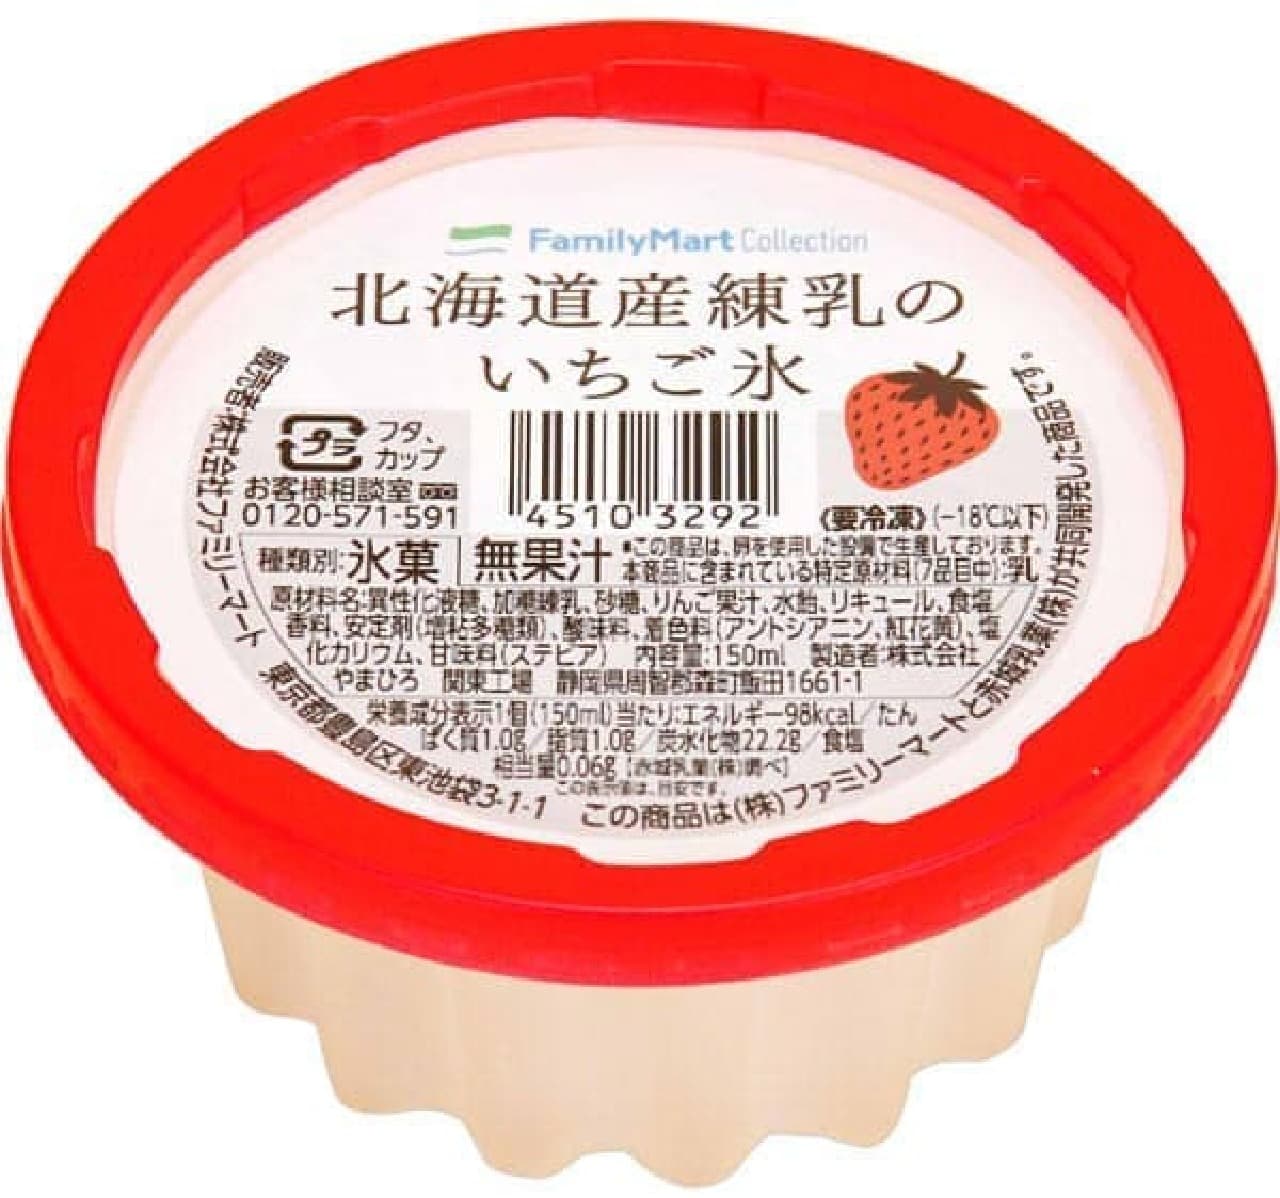 FamilyMart "Strawberry ice from Hokkaido condensed milk"